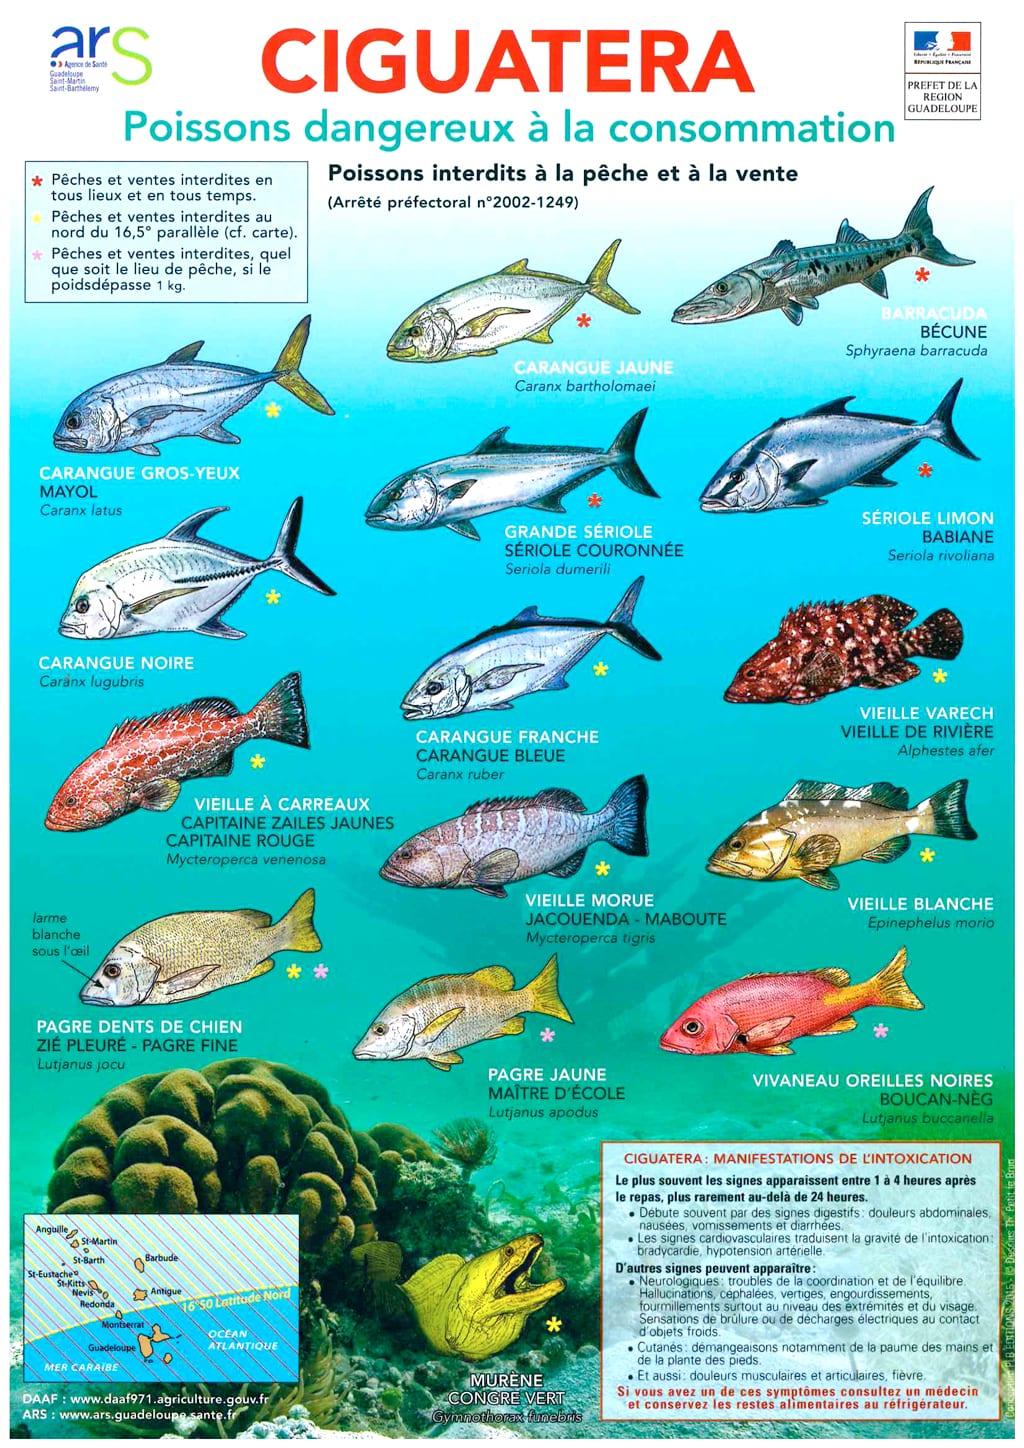 vissen zijn gevaarlijk om te eten -